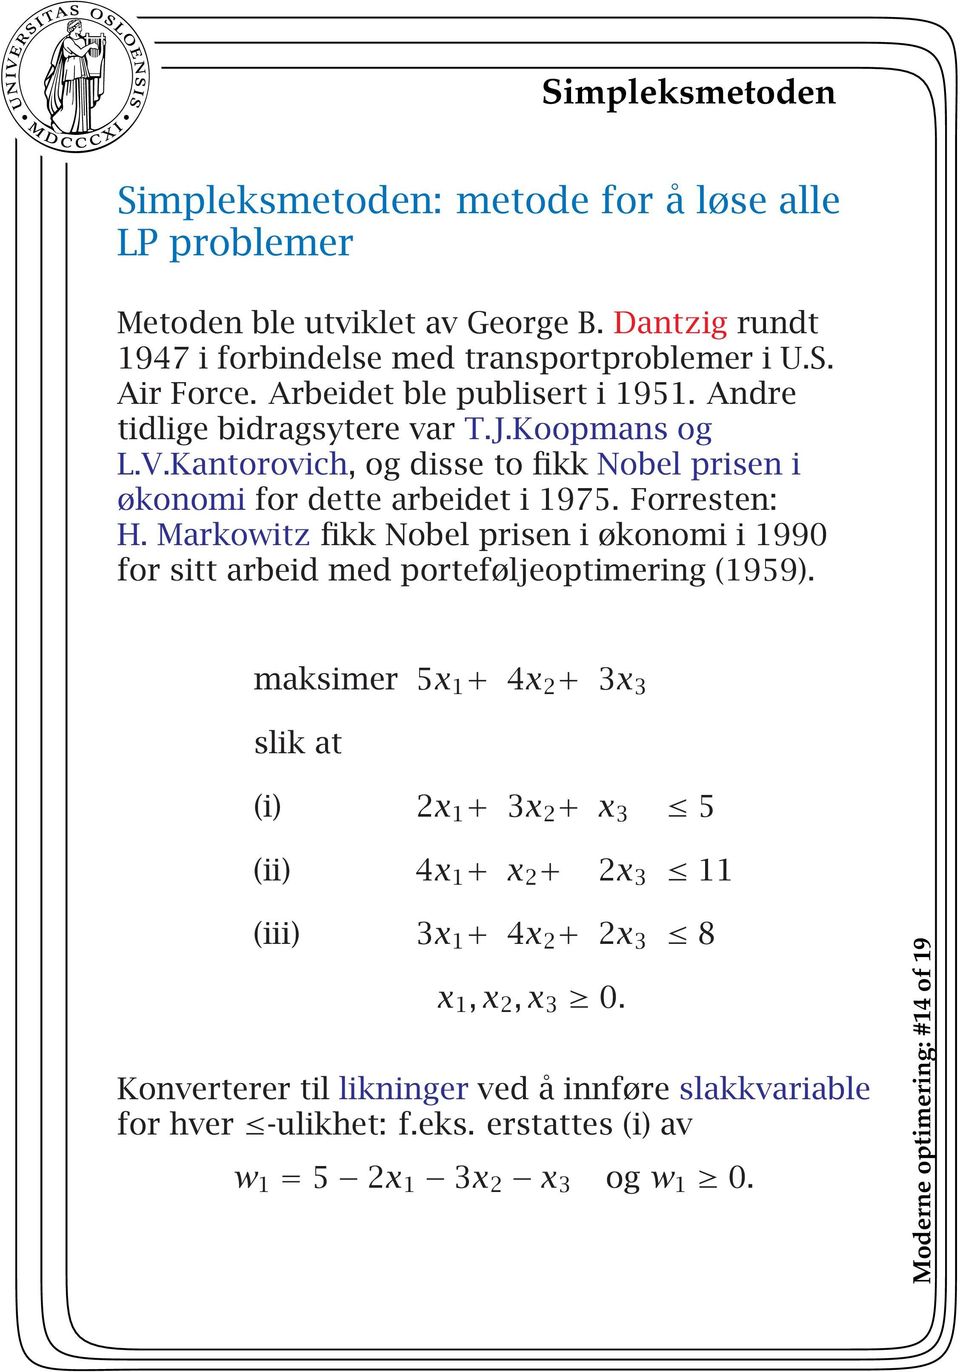 Markowitz fikk Nobel prisen i økonomi i 1990 for sitt arbeid med porteføljeoptimering (1959).